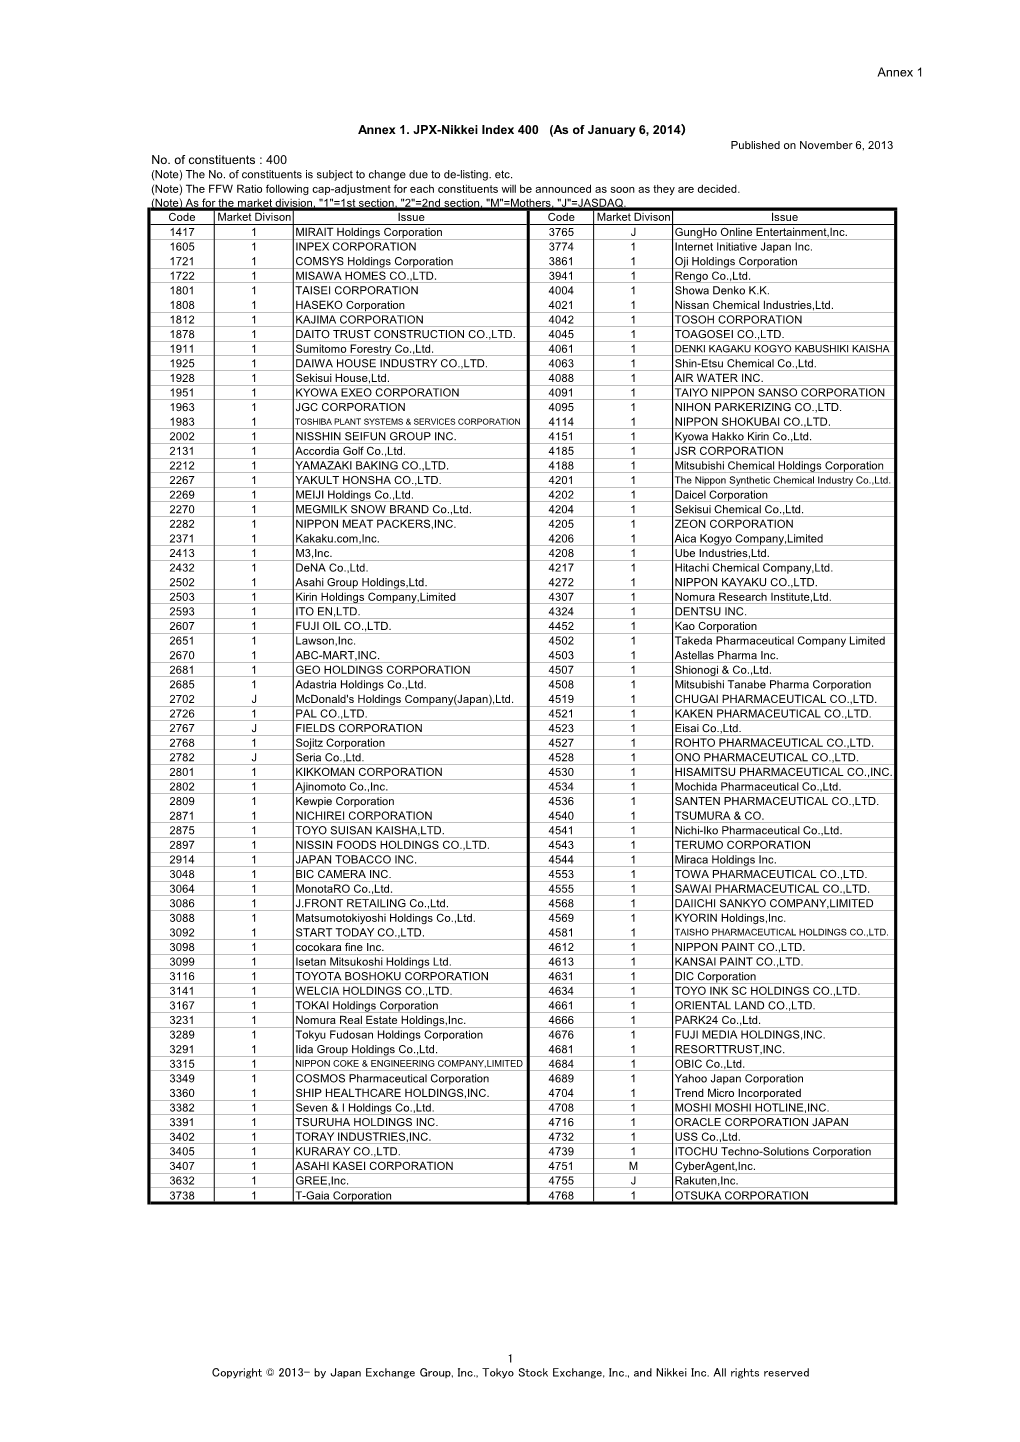 Annex 1 No. of Constituents : 400 Annex 1. JPX-Nikkei Index 400 (As